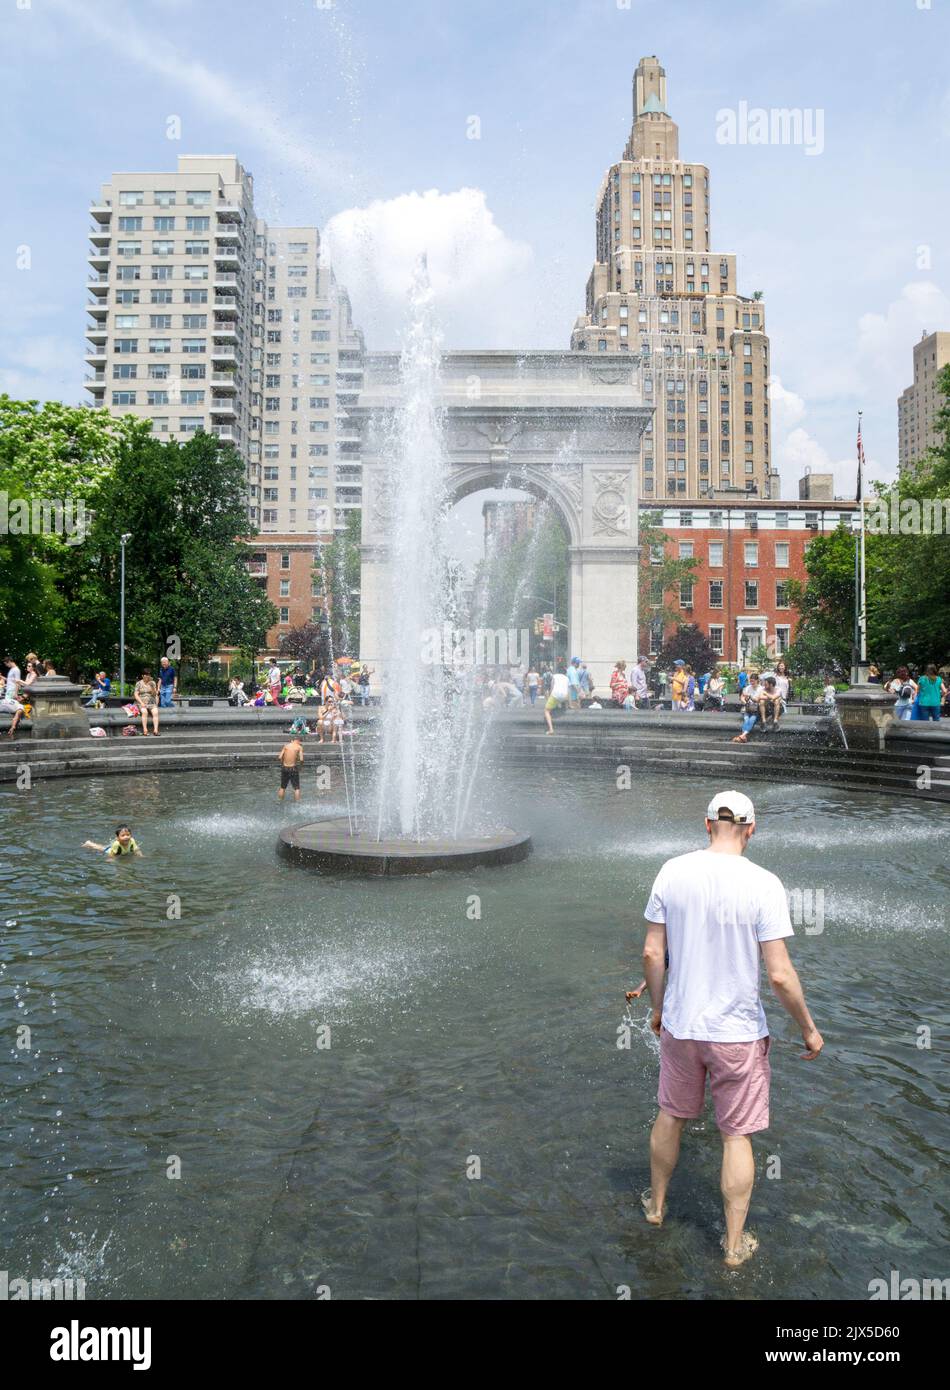 Battendo il caldo nella fontana del Washington Square Park, New York City. Foto Stock